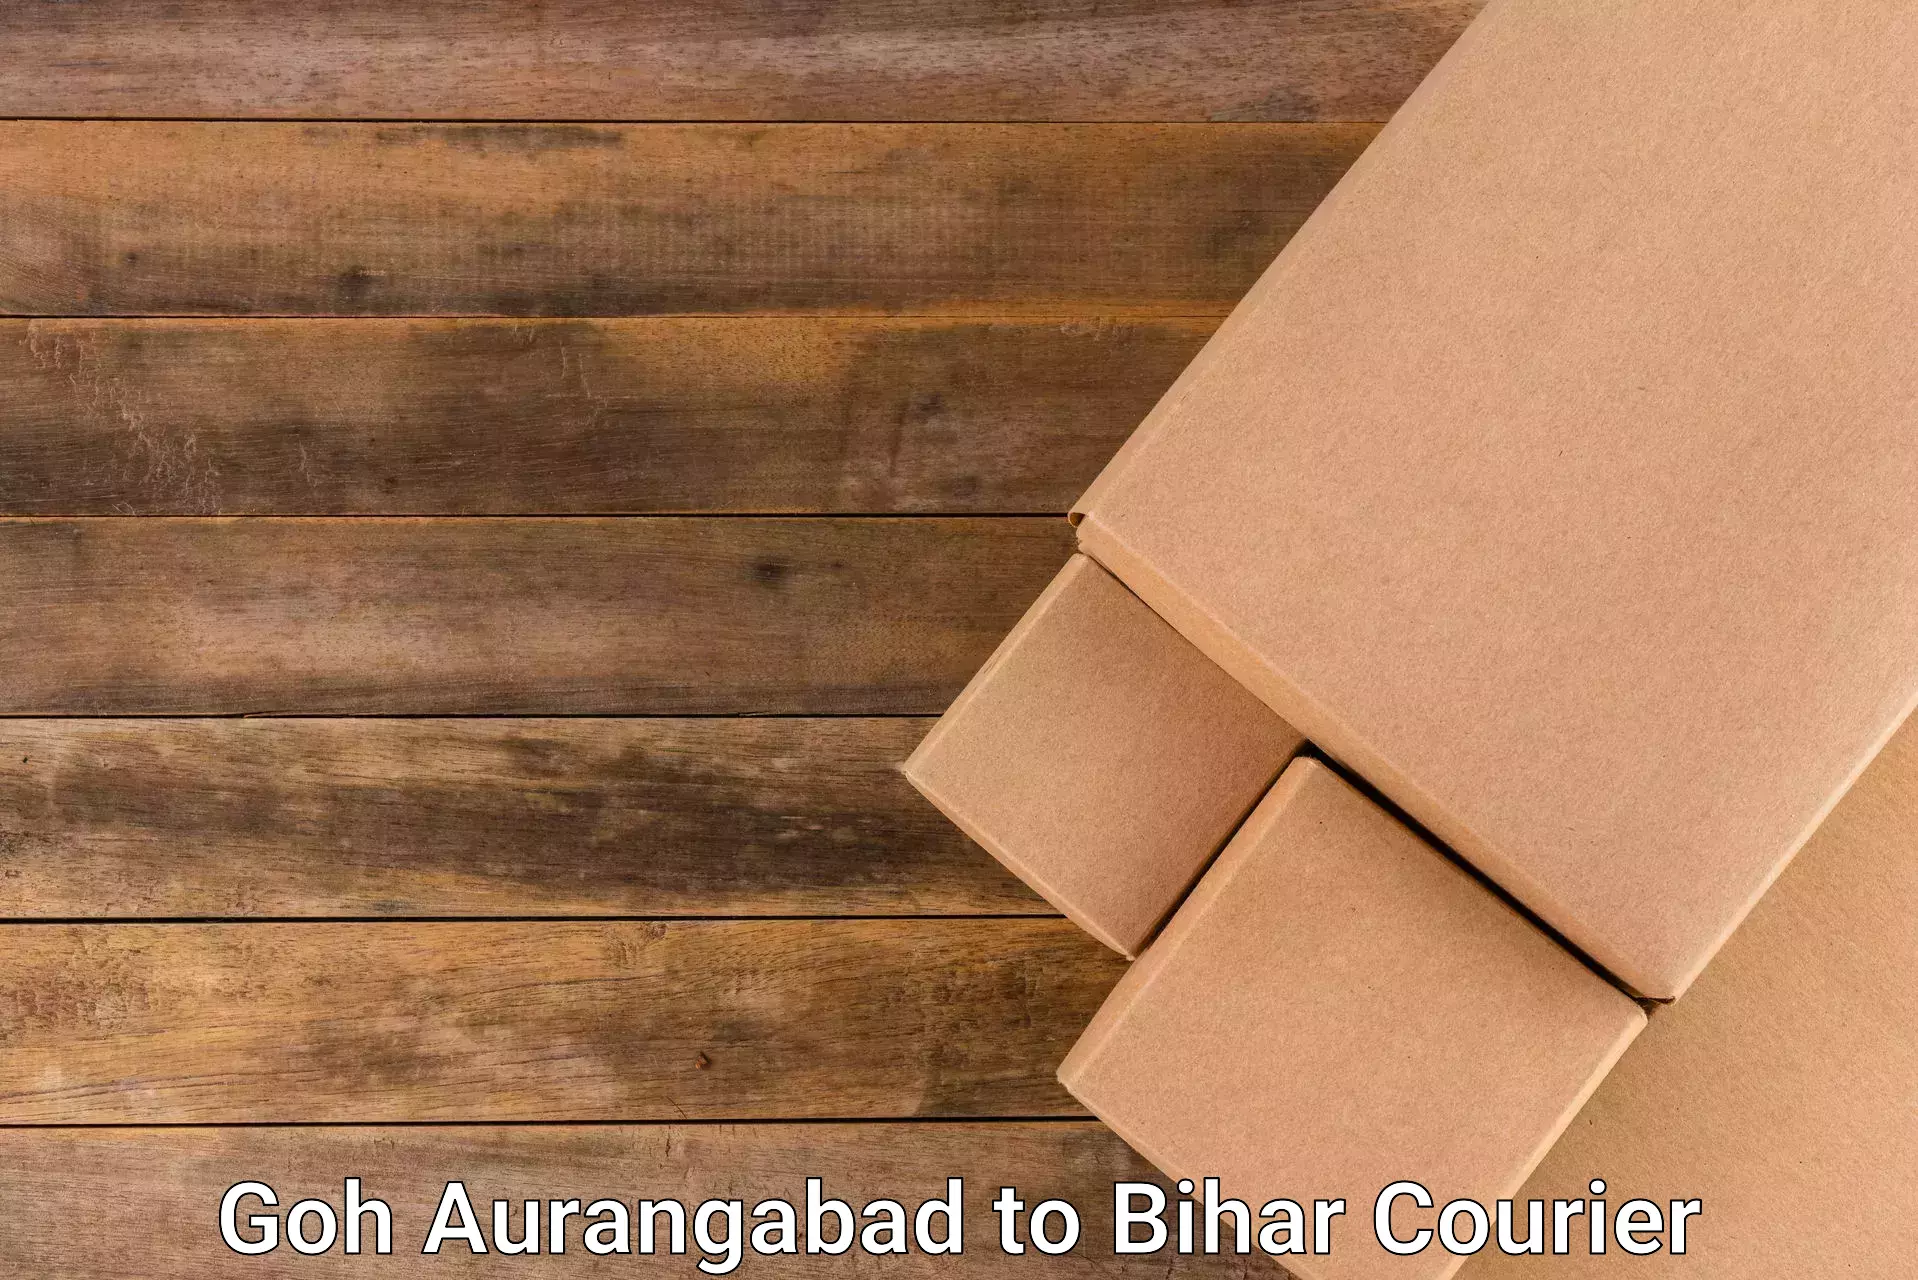 Courier service partnerships Goh Aurangabad to Saran